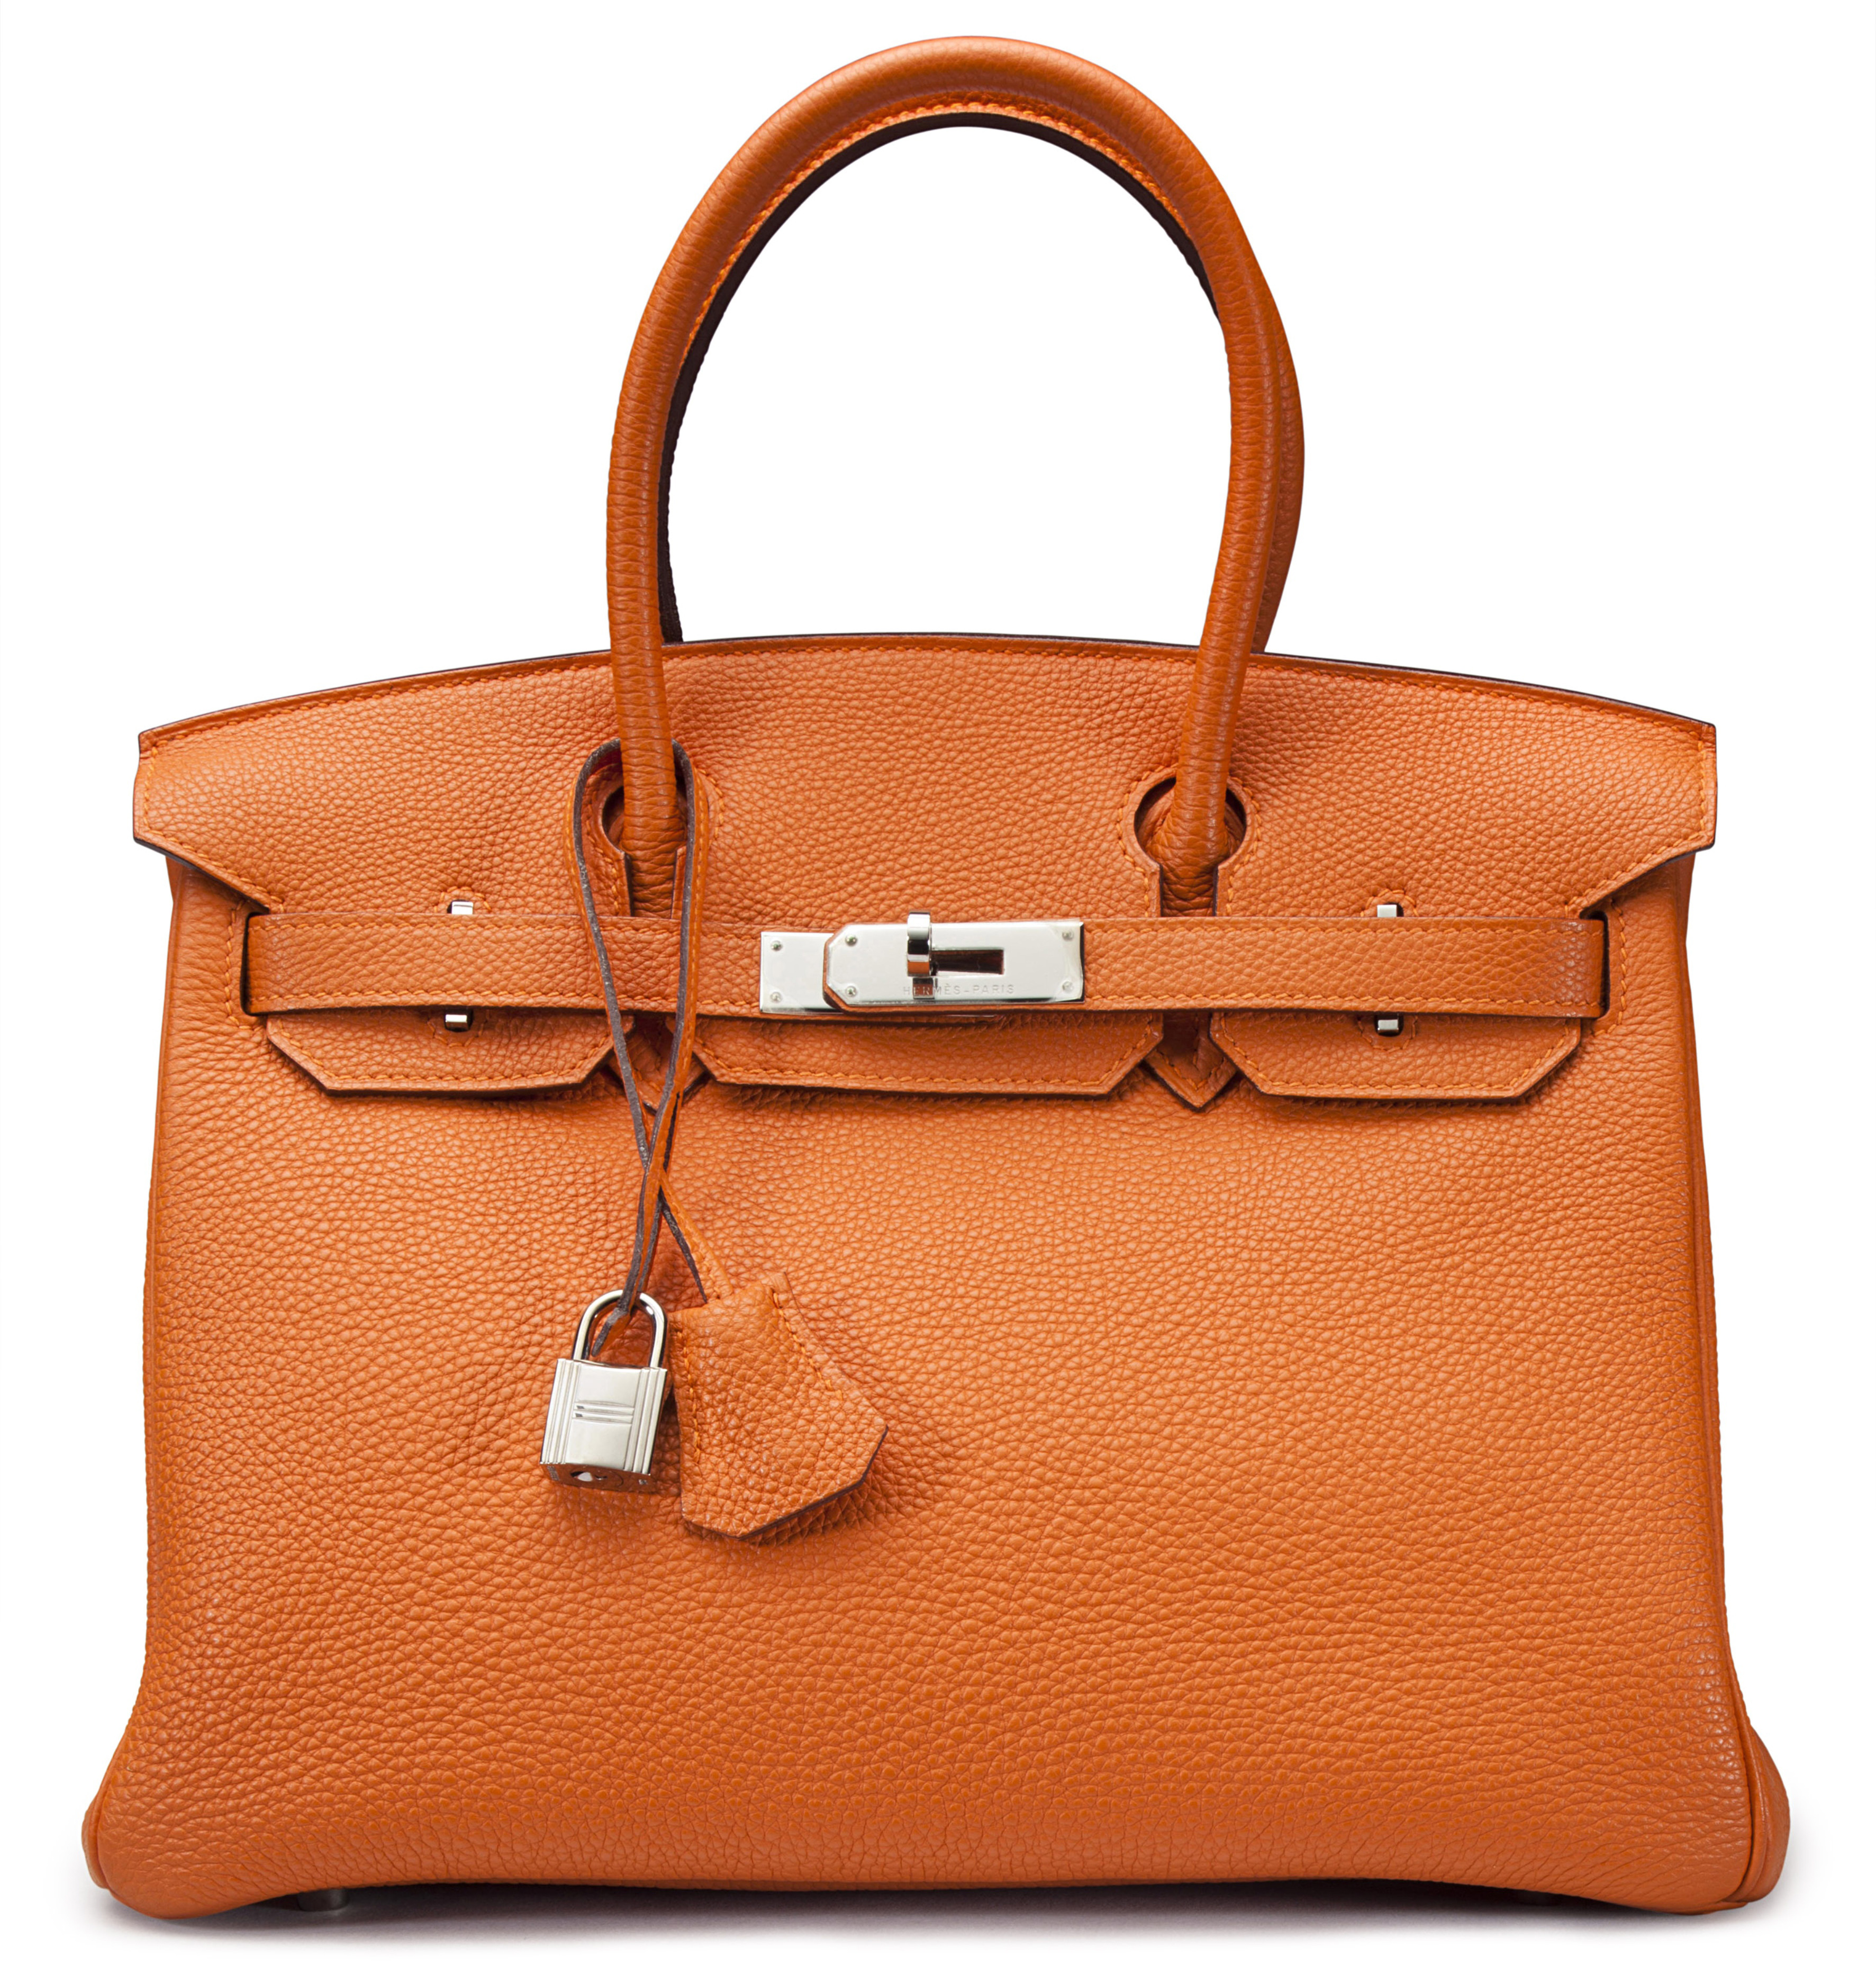 Hermes Birkin Bag Price Malaysia - Mina Suzann